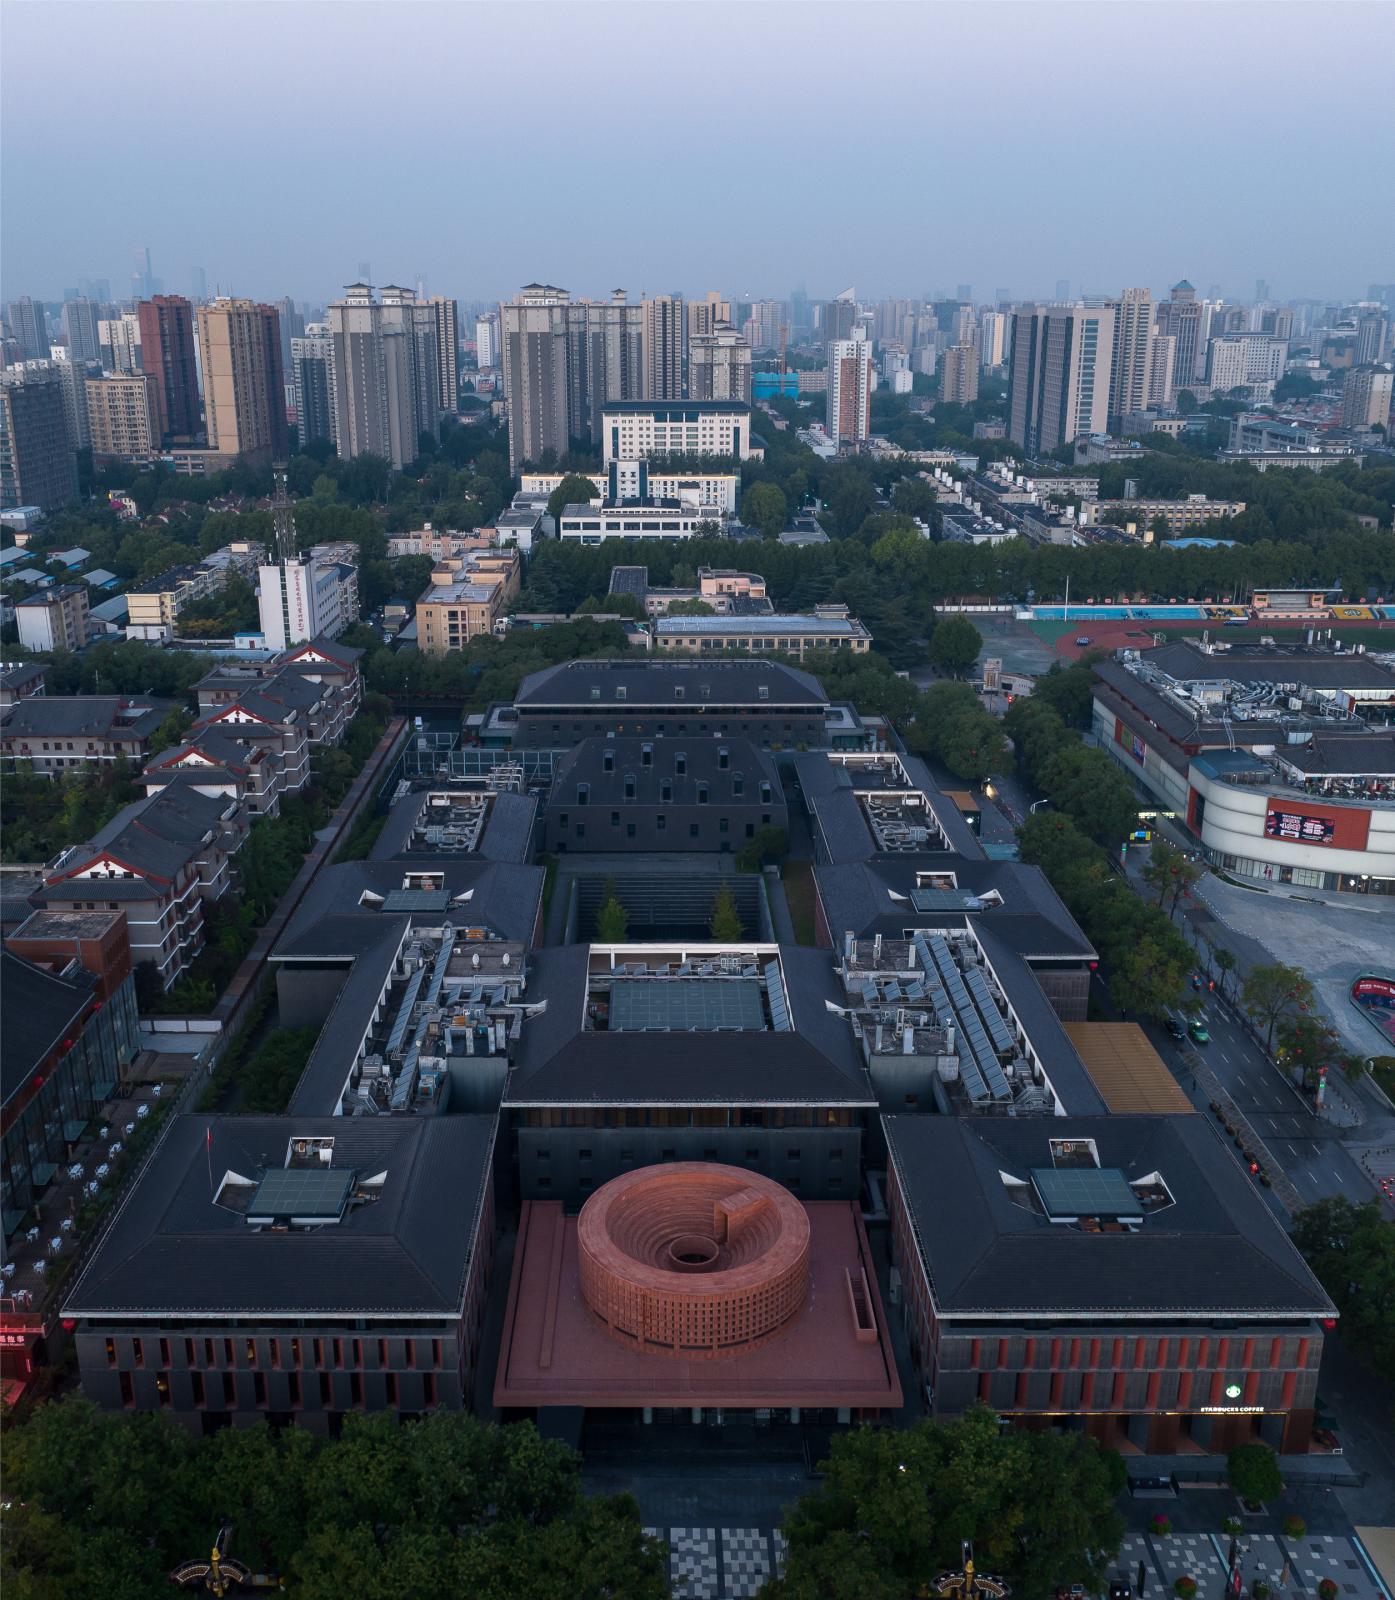 Qujiang Museum